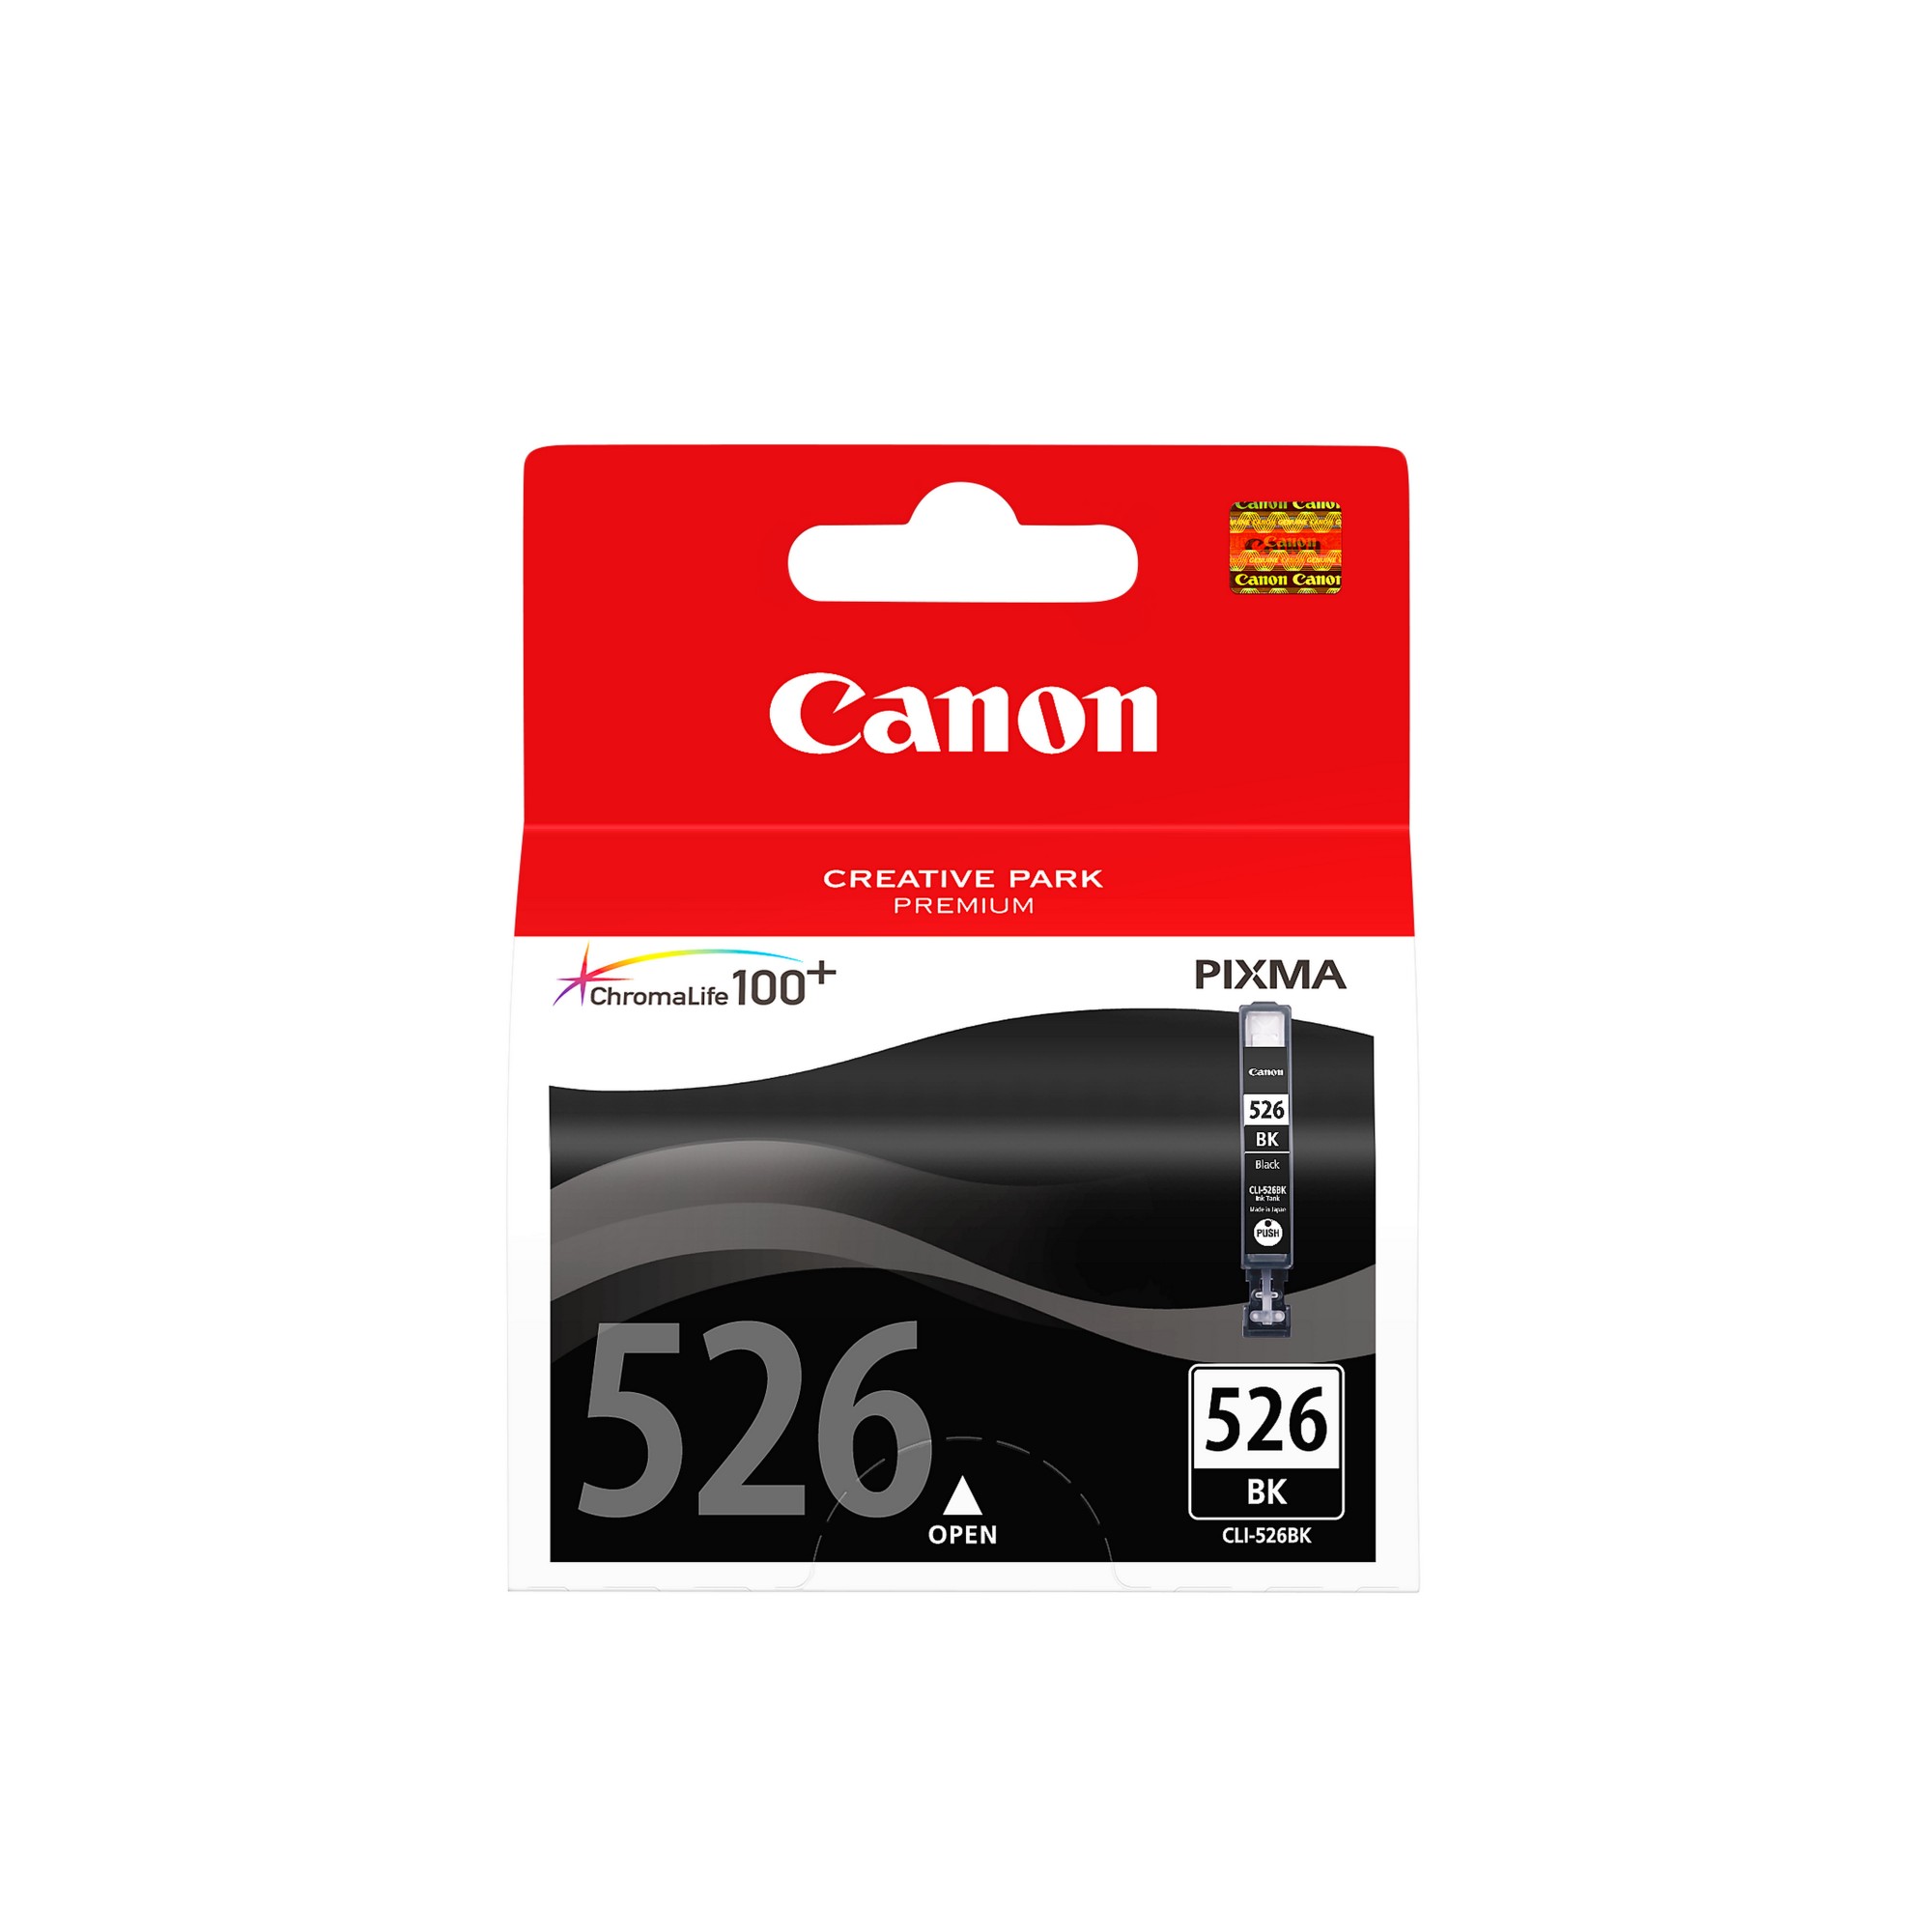 Canon CLI-526BK Inkjet Cartridge Black 4540B001